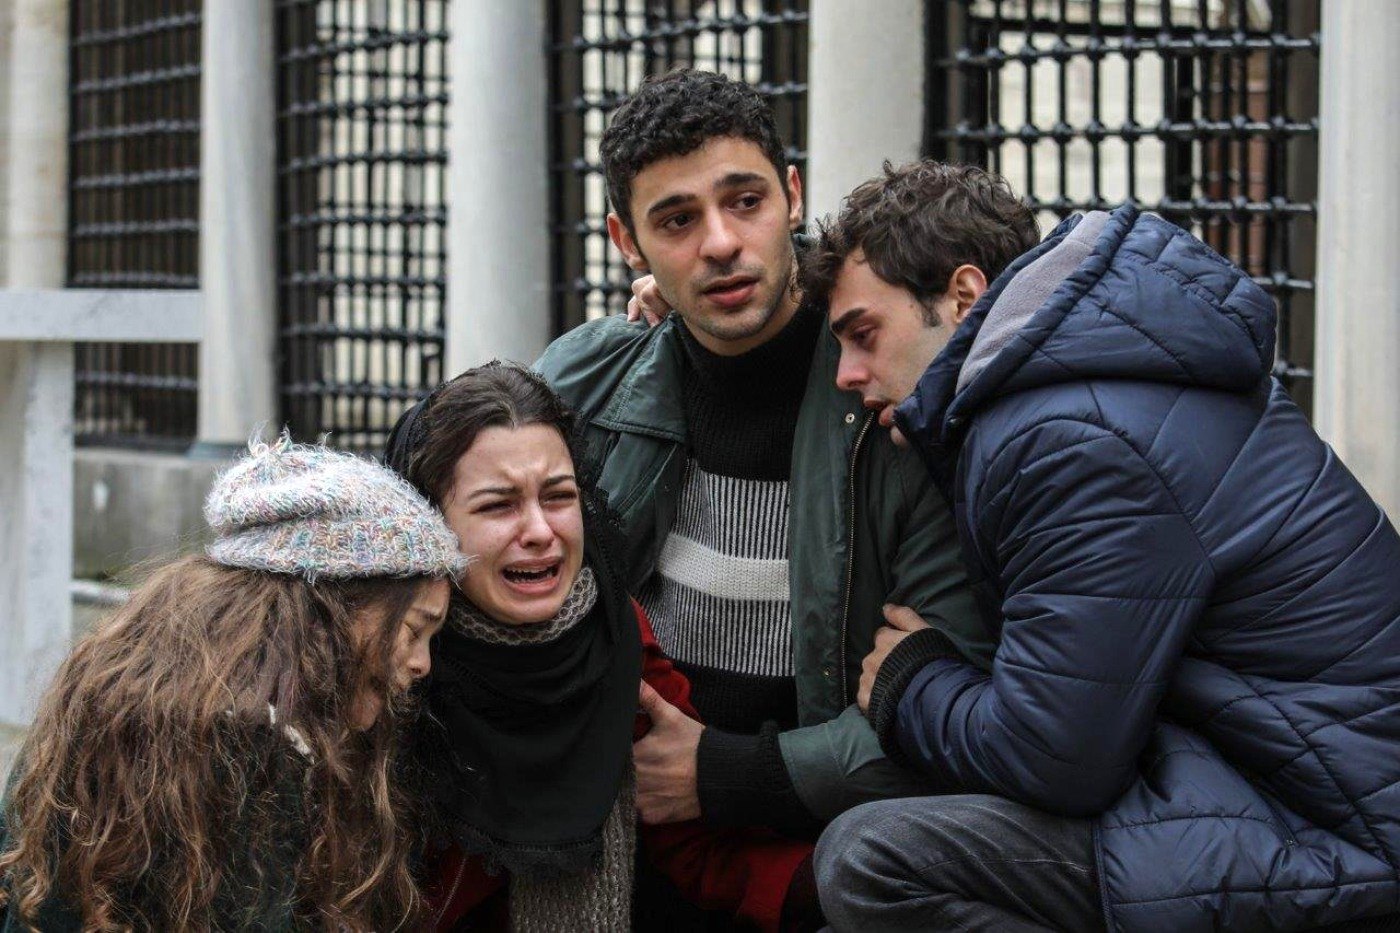 Una dramática escena impactará a los espectadores en el primer capítulo de la serie turca Hermanos